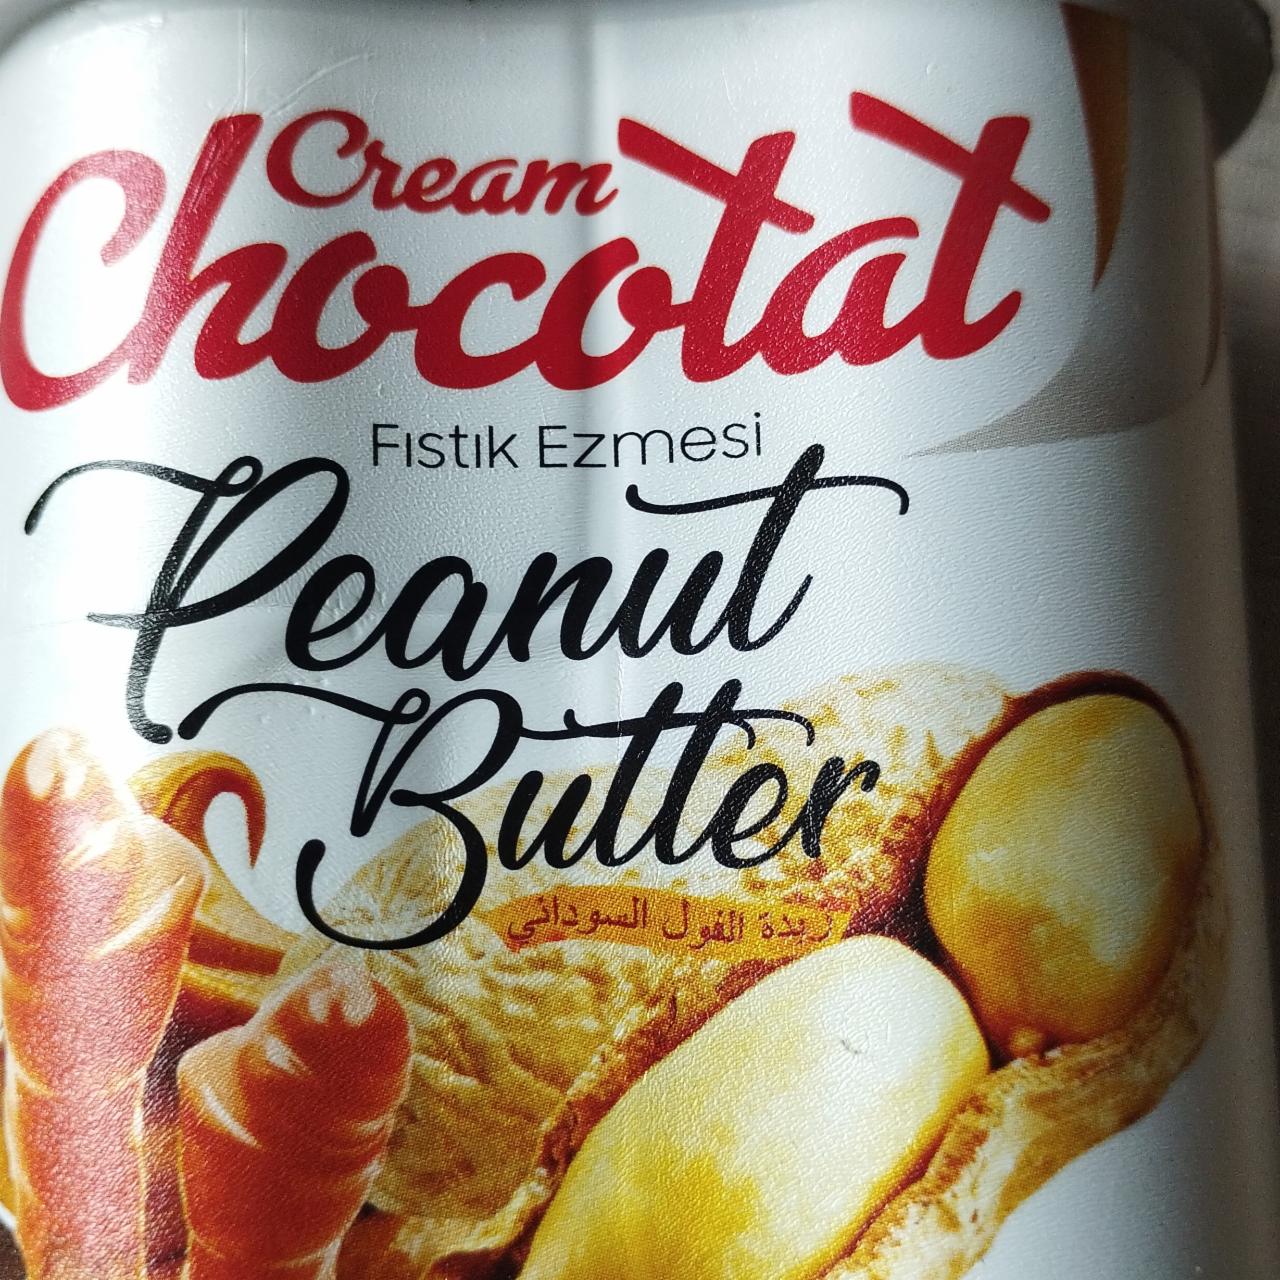 Фото - Арахісова паста Peanut Butter Cream Chocotat